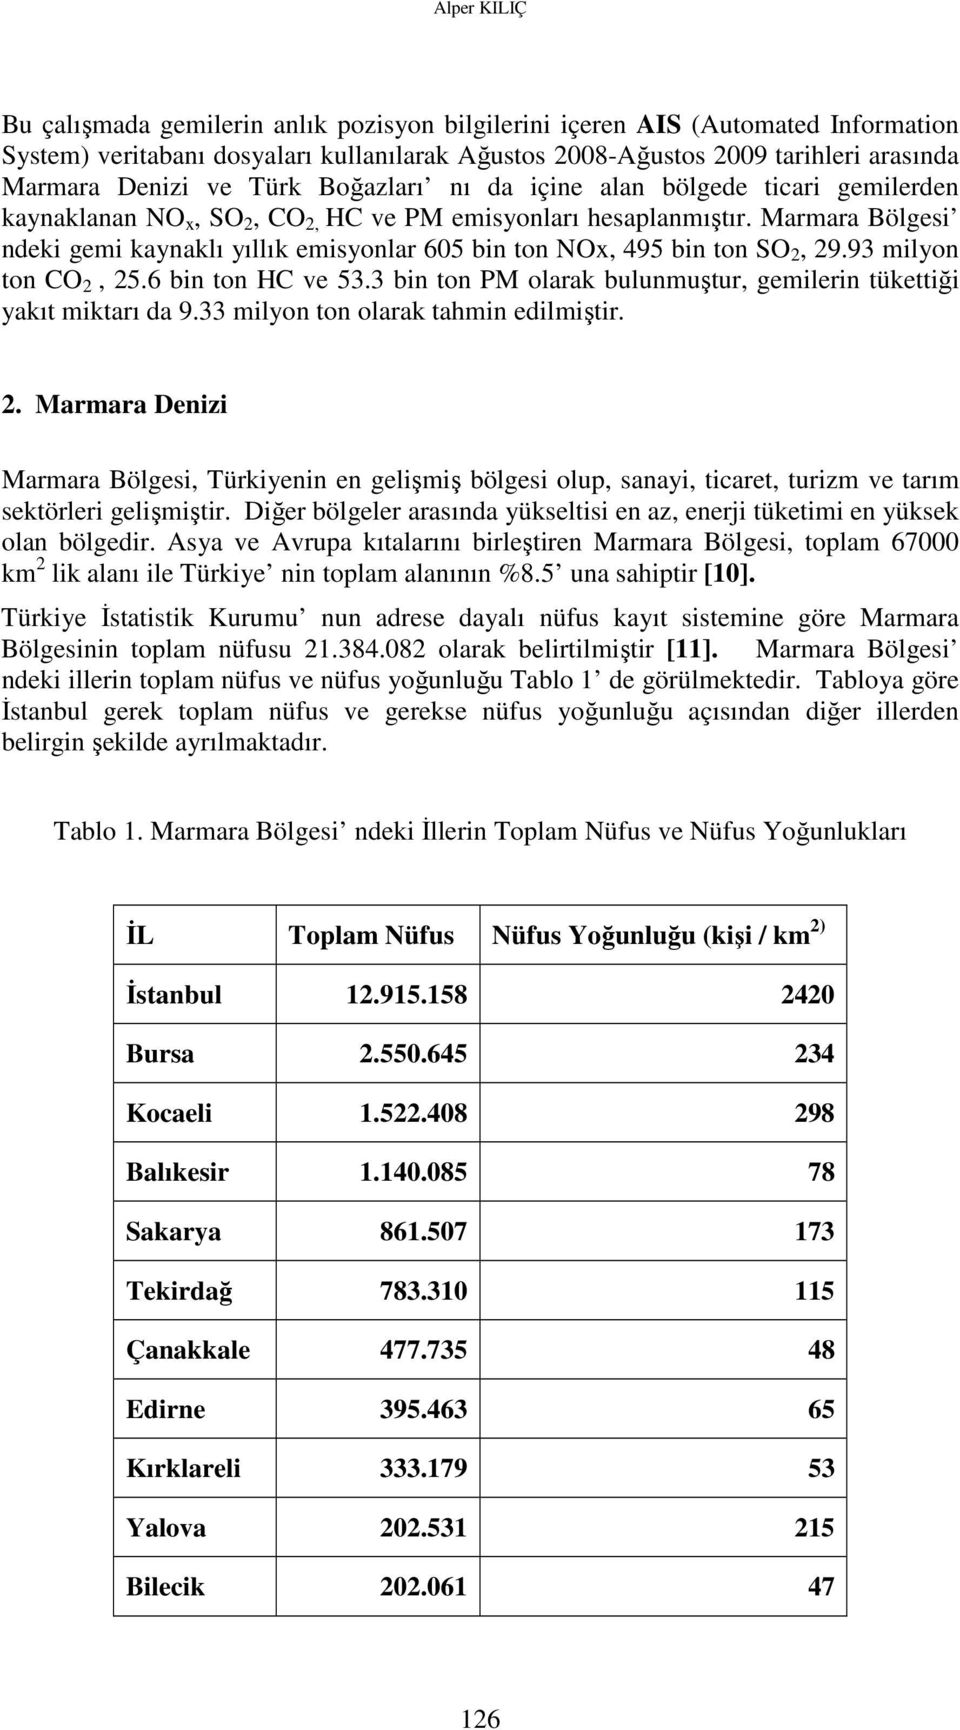 Marmara Bölgesi ndeki gemi kaynaklı yıllık emisyonlar 605 bin ton NOx, 495 bin ton SO 2, 29.93 milyon ton CO 2, 25.6 bin ton HC ve 53.